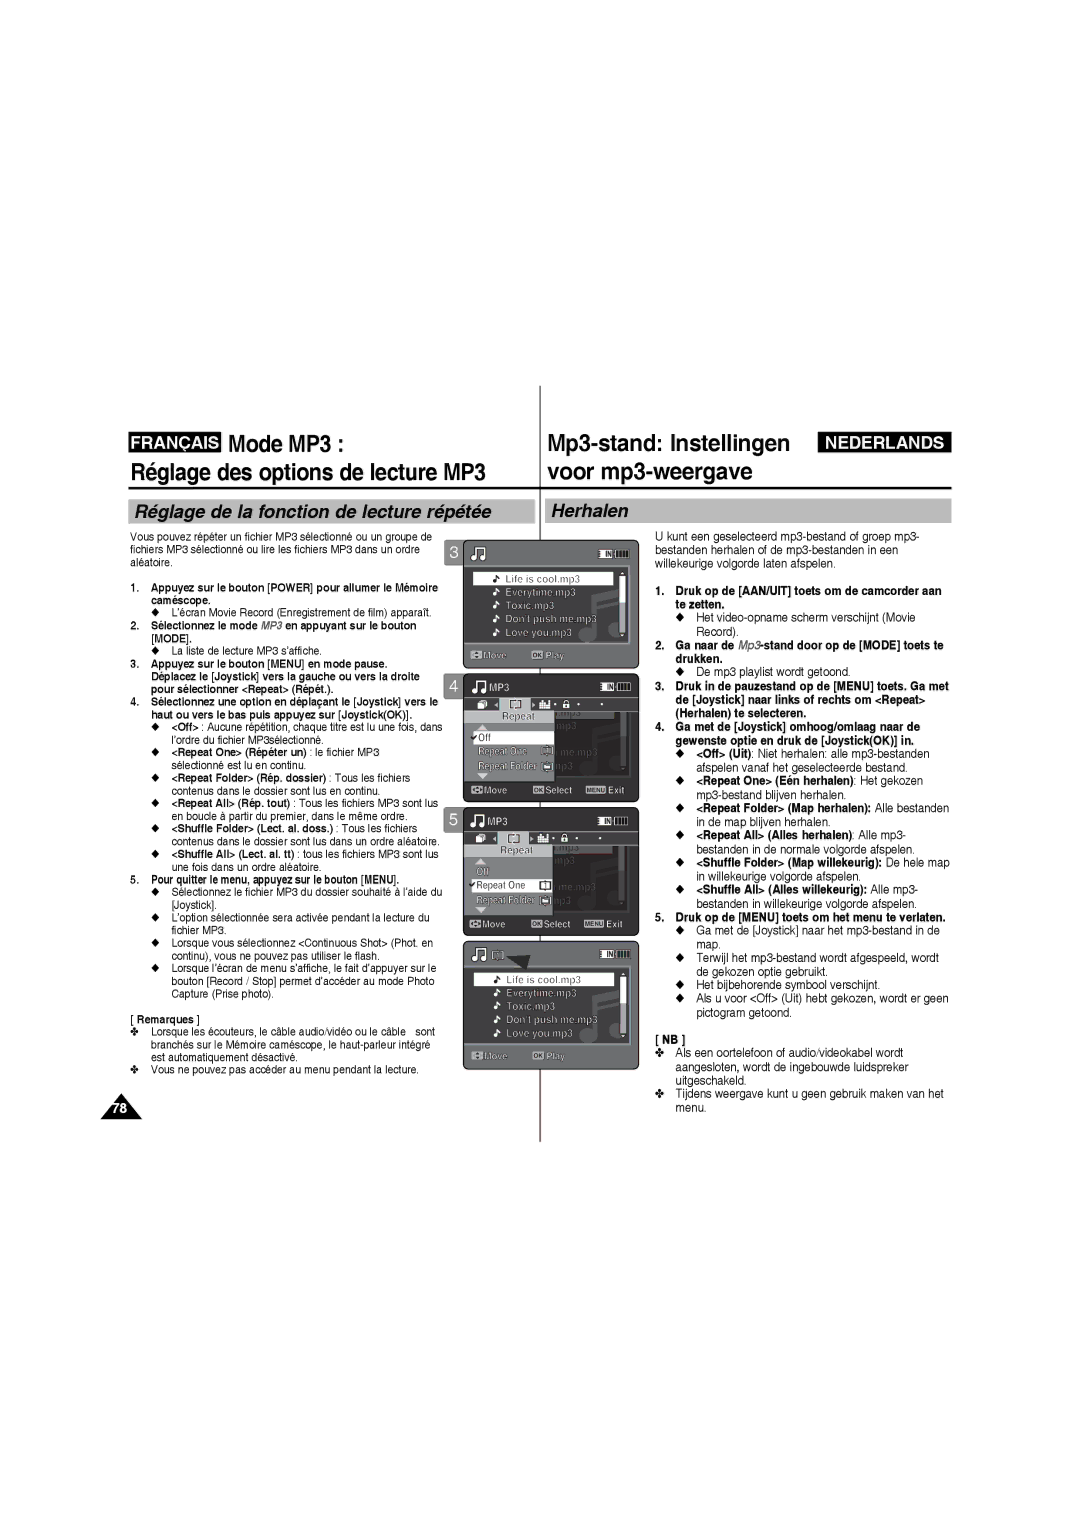 Samsung VP-MM11S/XEF manual Mode MP3, Réglage de la fonction de lecture répétée Herhalen, La liste de lecture MP3 s’affiche 